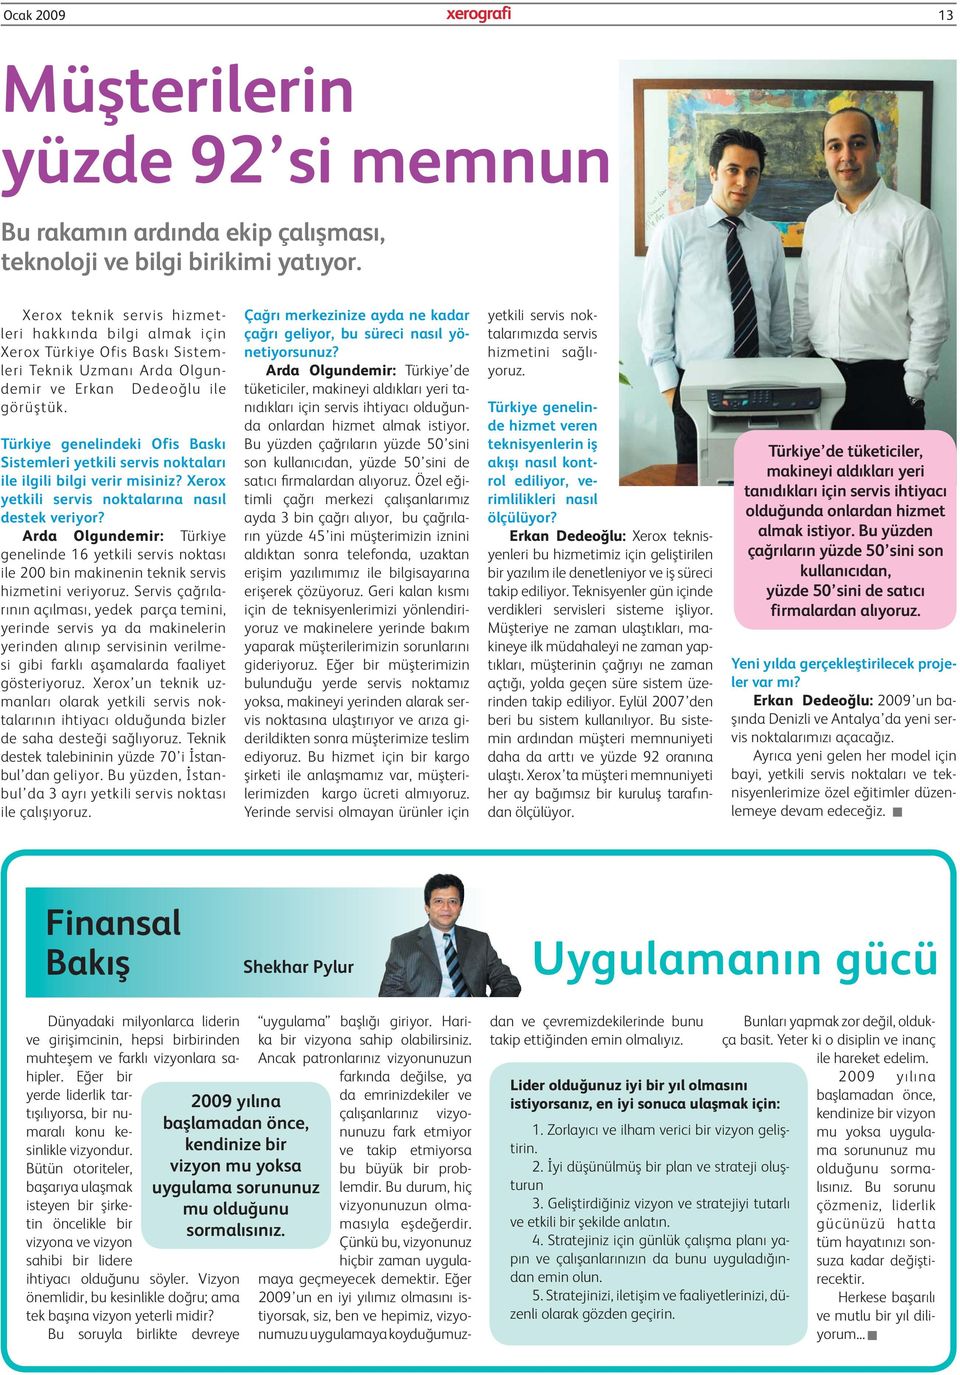 Türkiye genelindeki Ofis Baskı Sistemleri yetkili servis noktaları ile ilgili bilgi verir misiniz? Xerox yetkili servis noktalarına nasıl destek veriyor?